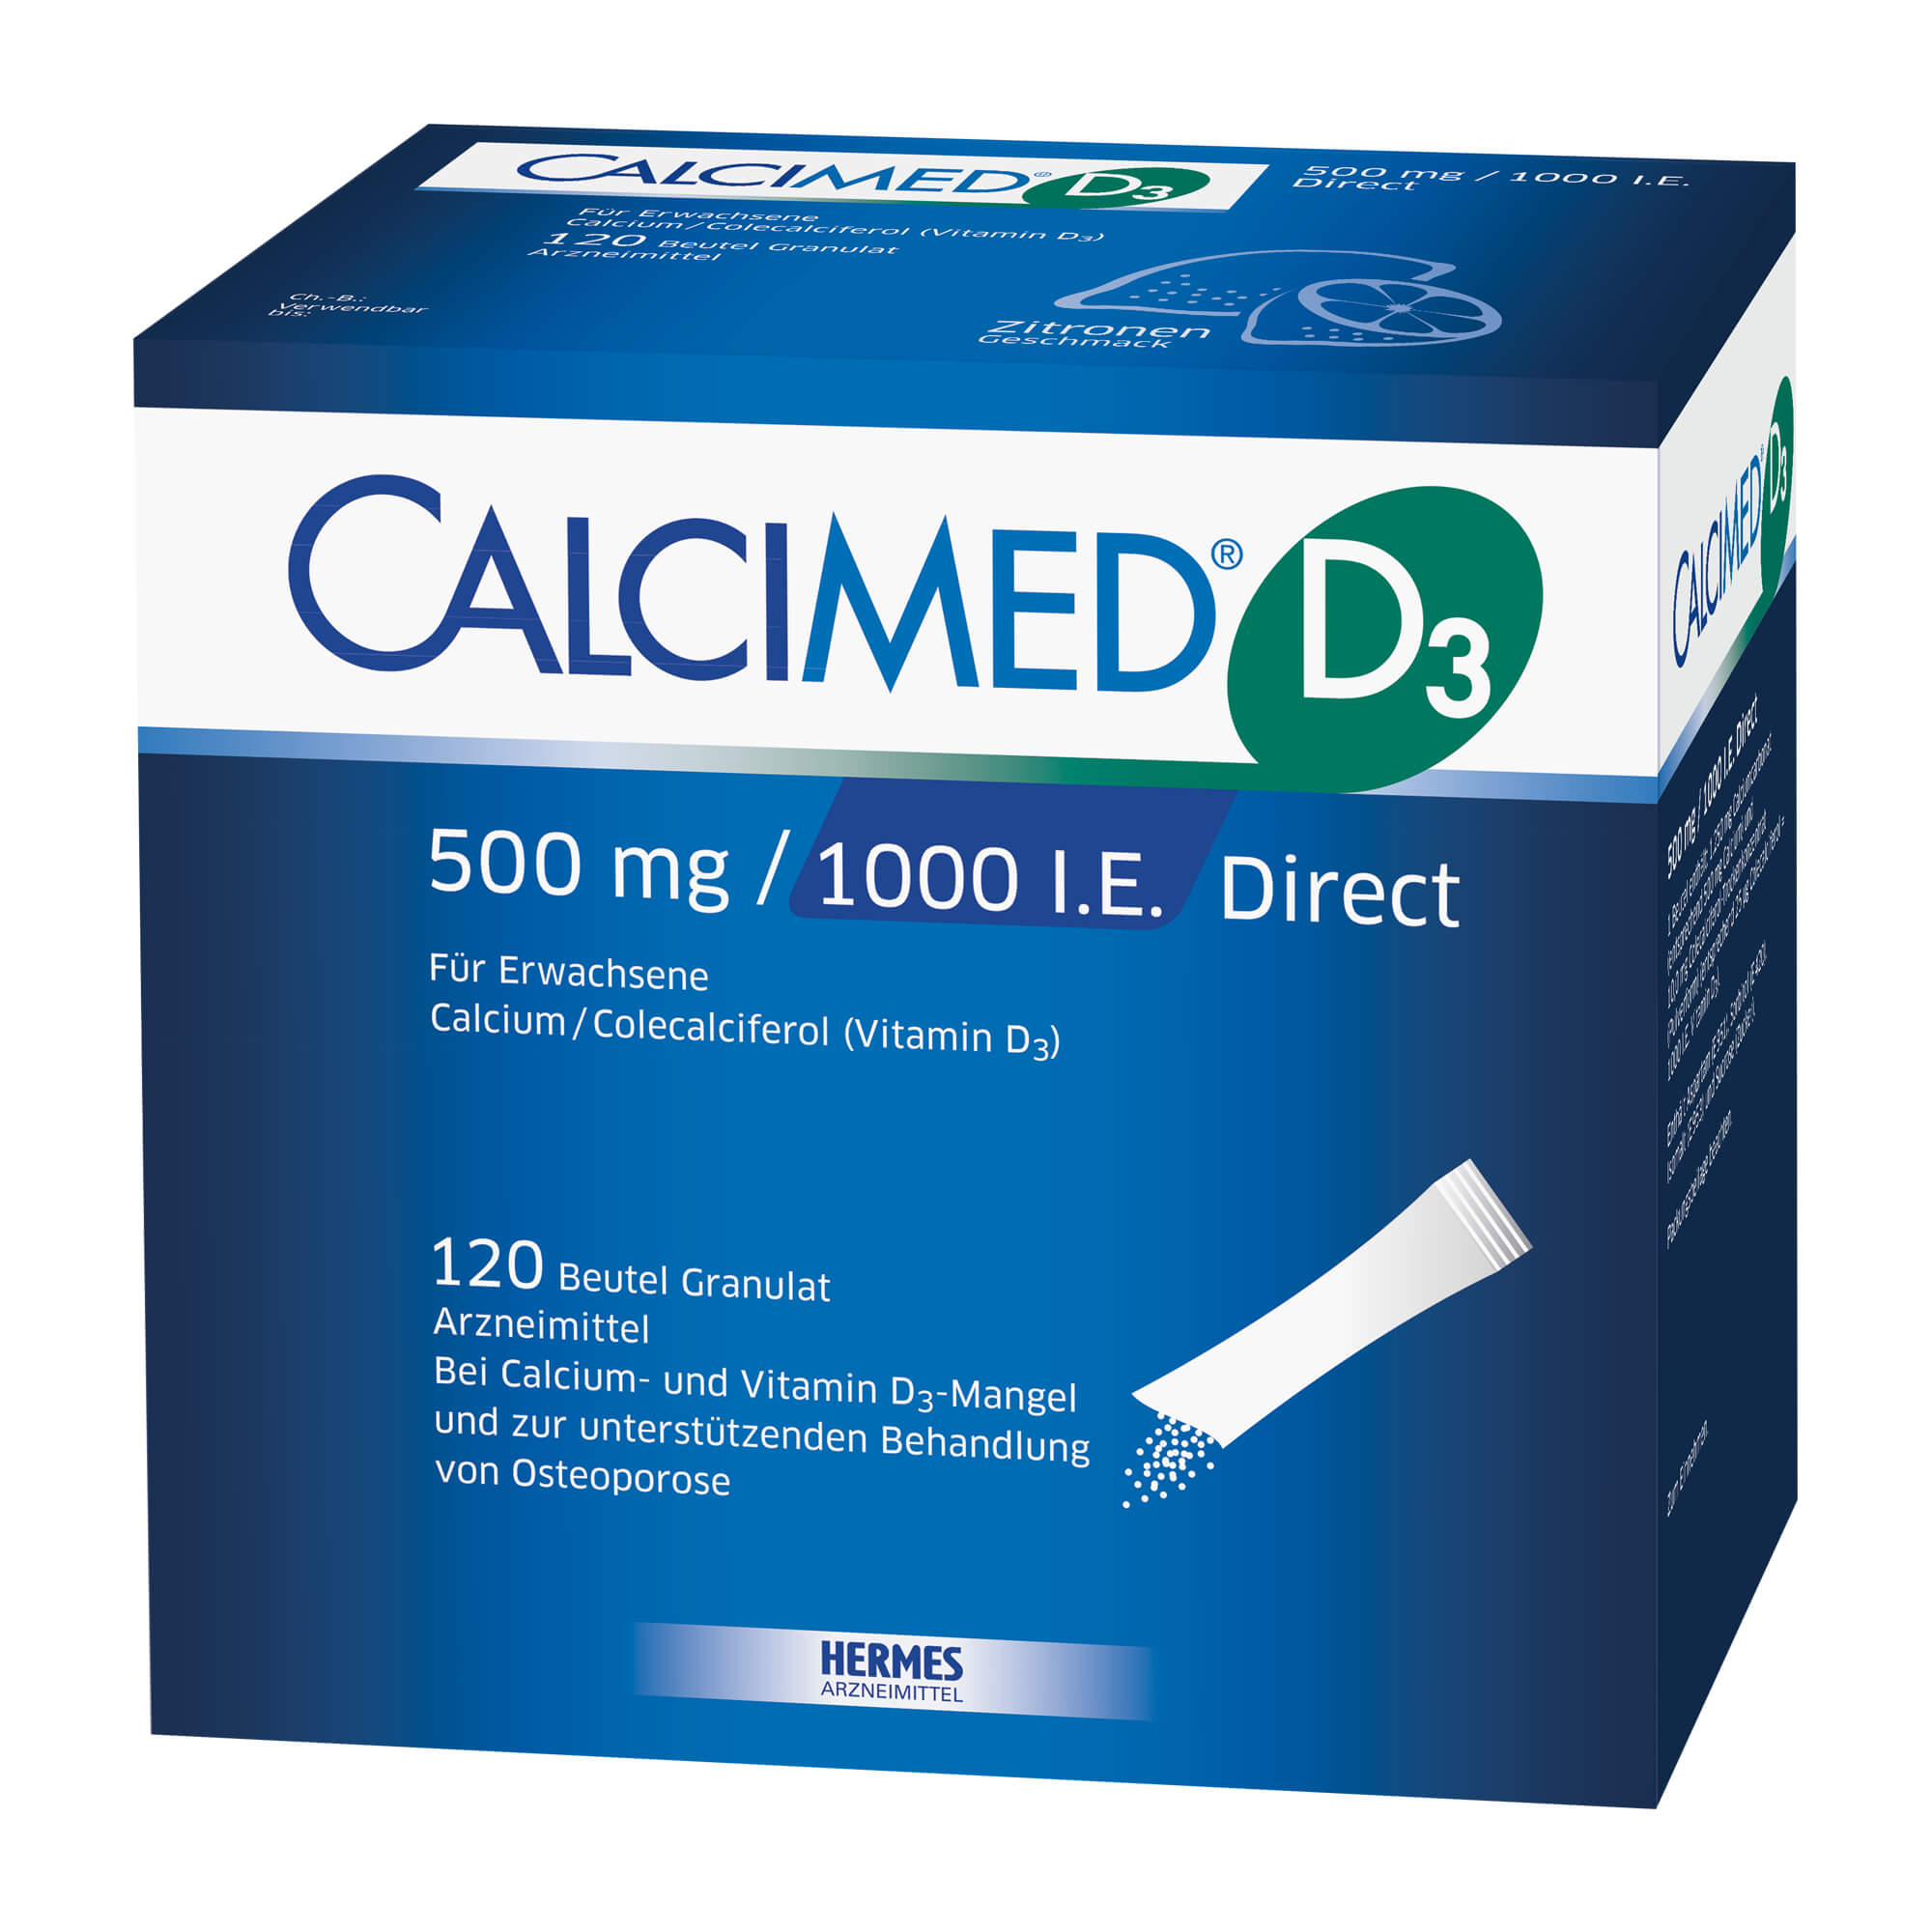 Calcium-Vitamin D3-Präparat. Zur Anwendung bei Erwachsenen. Mit Zitronengeschmack.